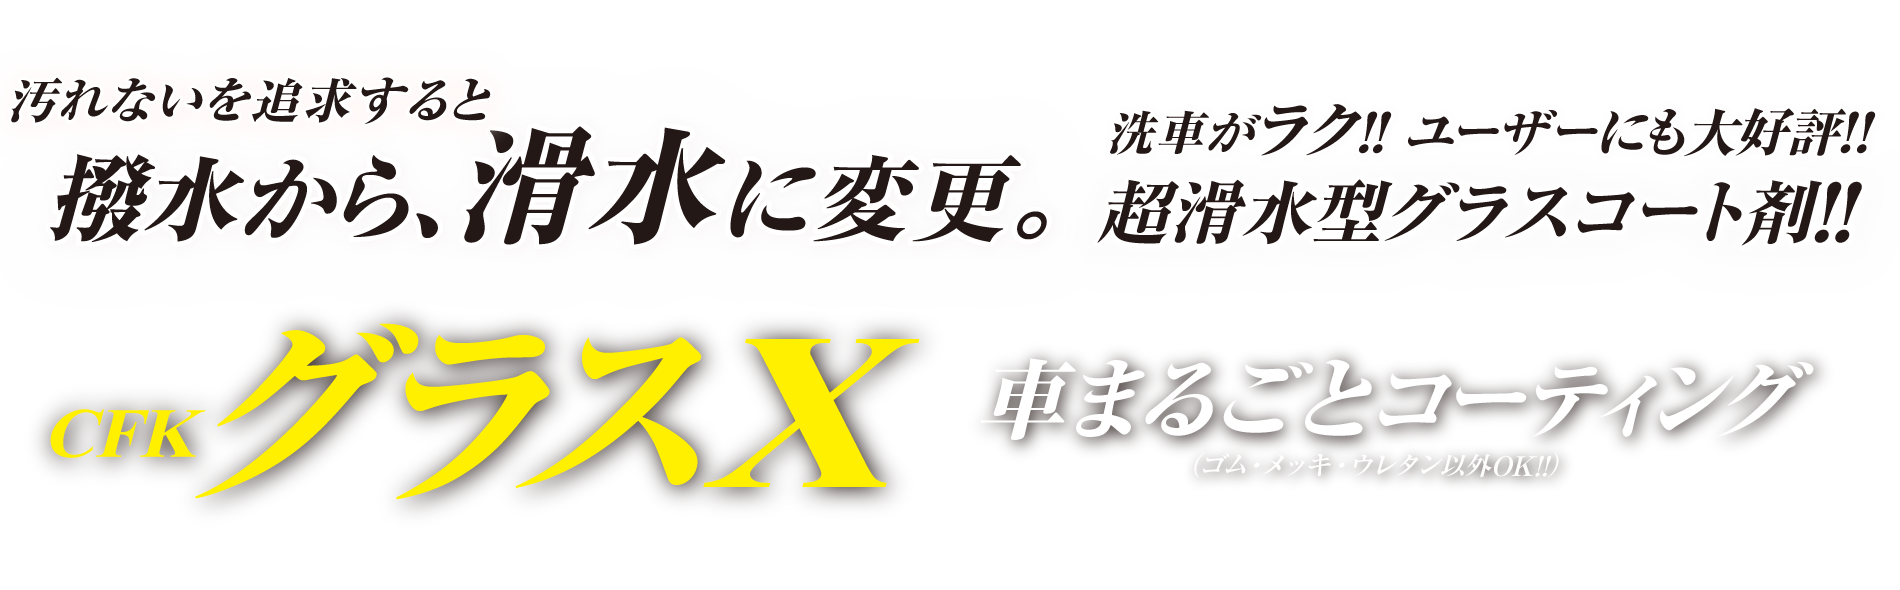 GX-7 GX7 OXX  R[g R[eBO R[g